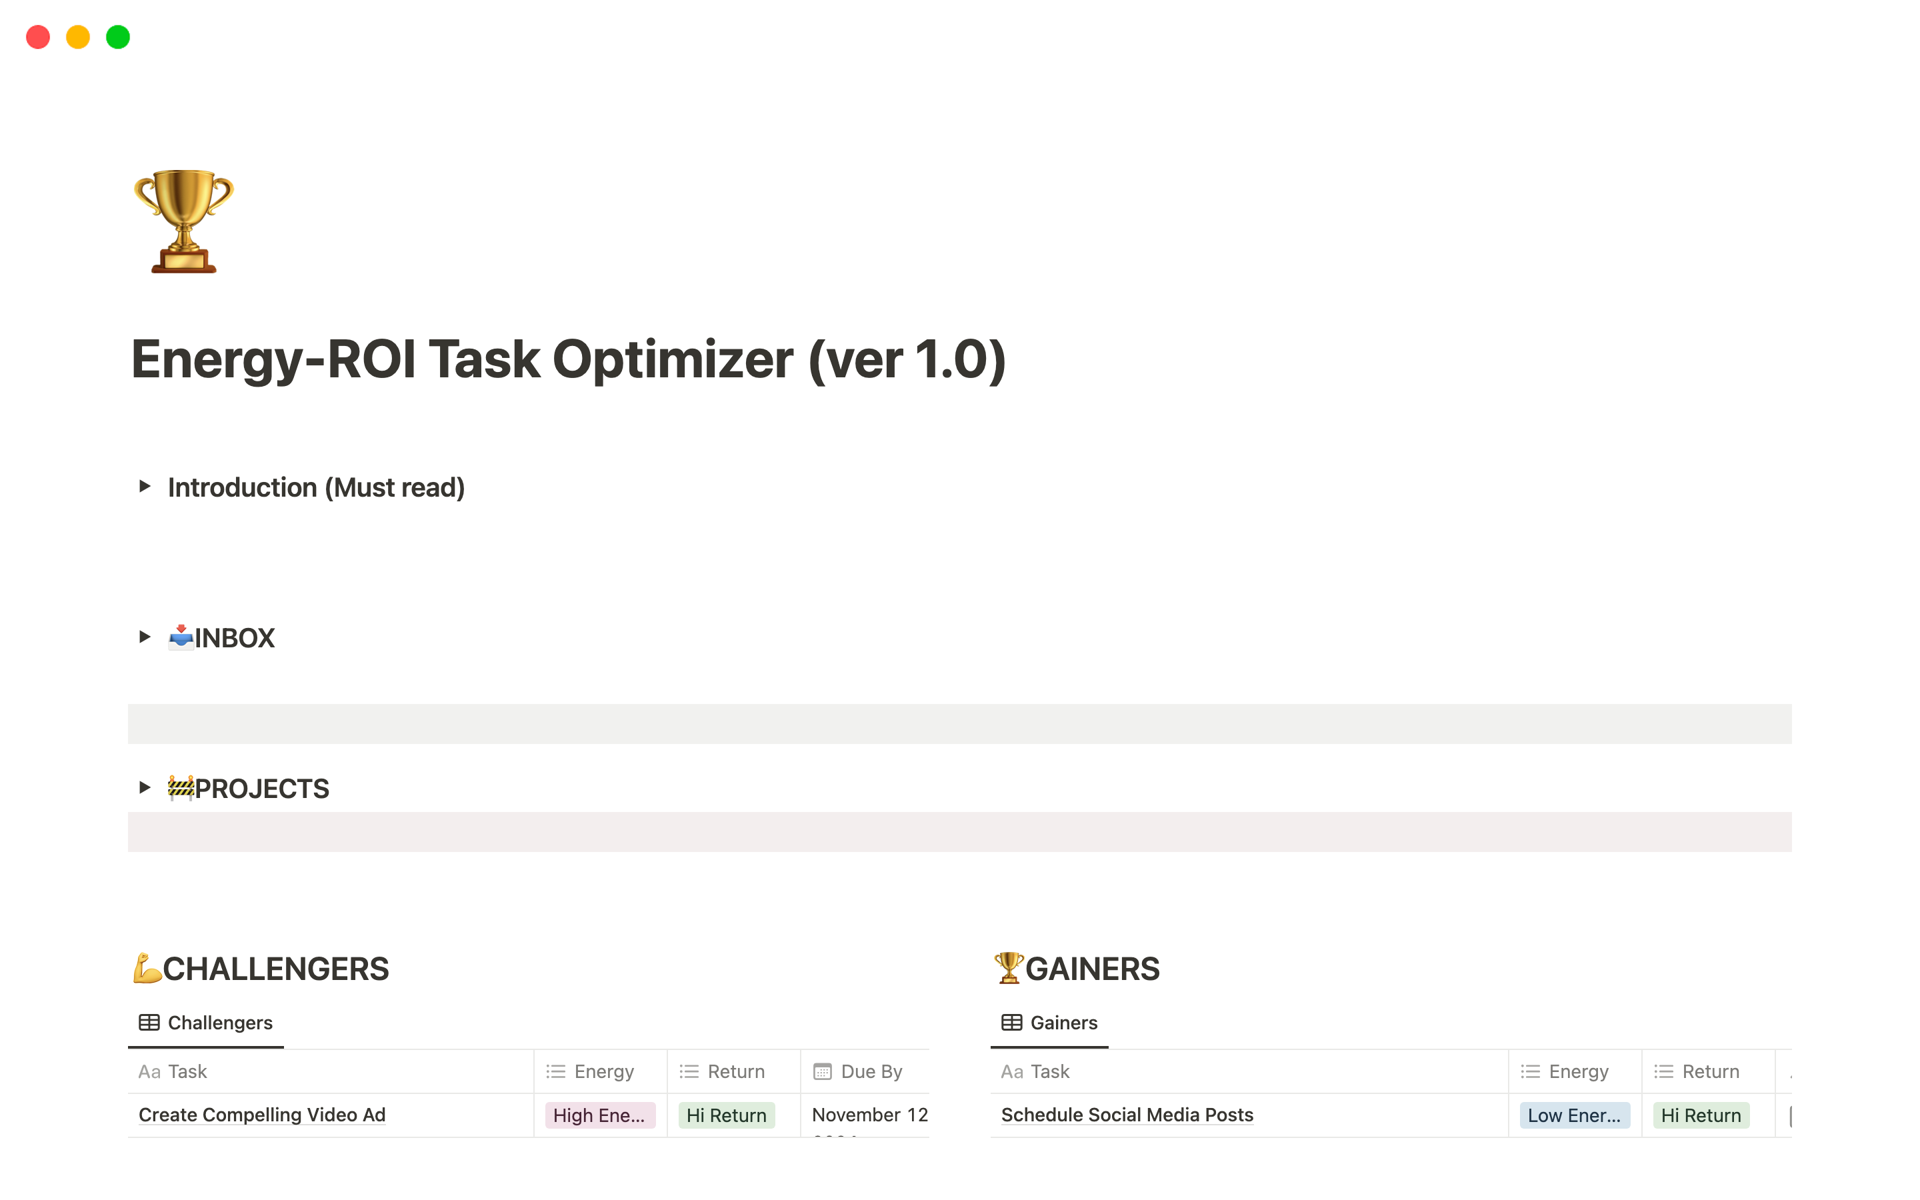 Energy-ROI Task Optimizer (ver 1.0)님의 템플릿 미리보기